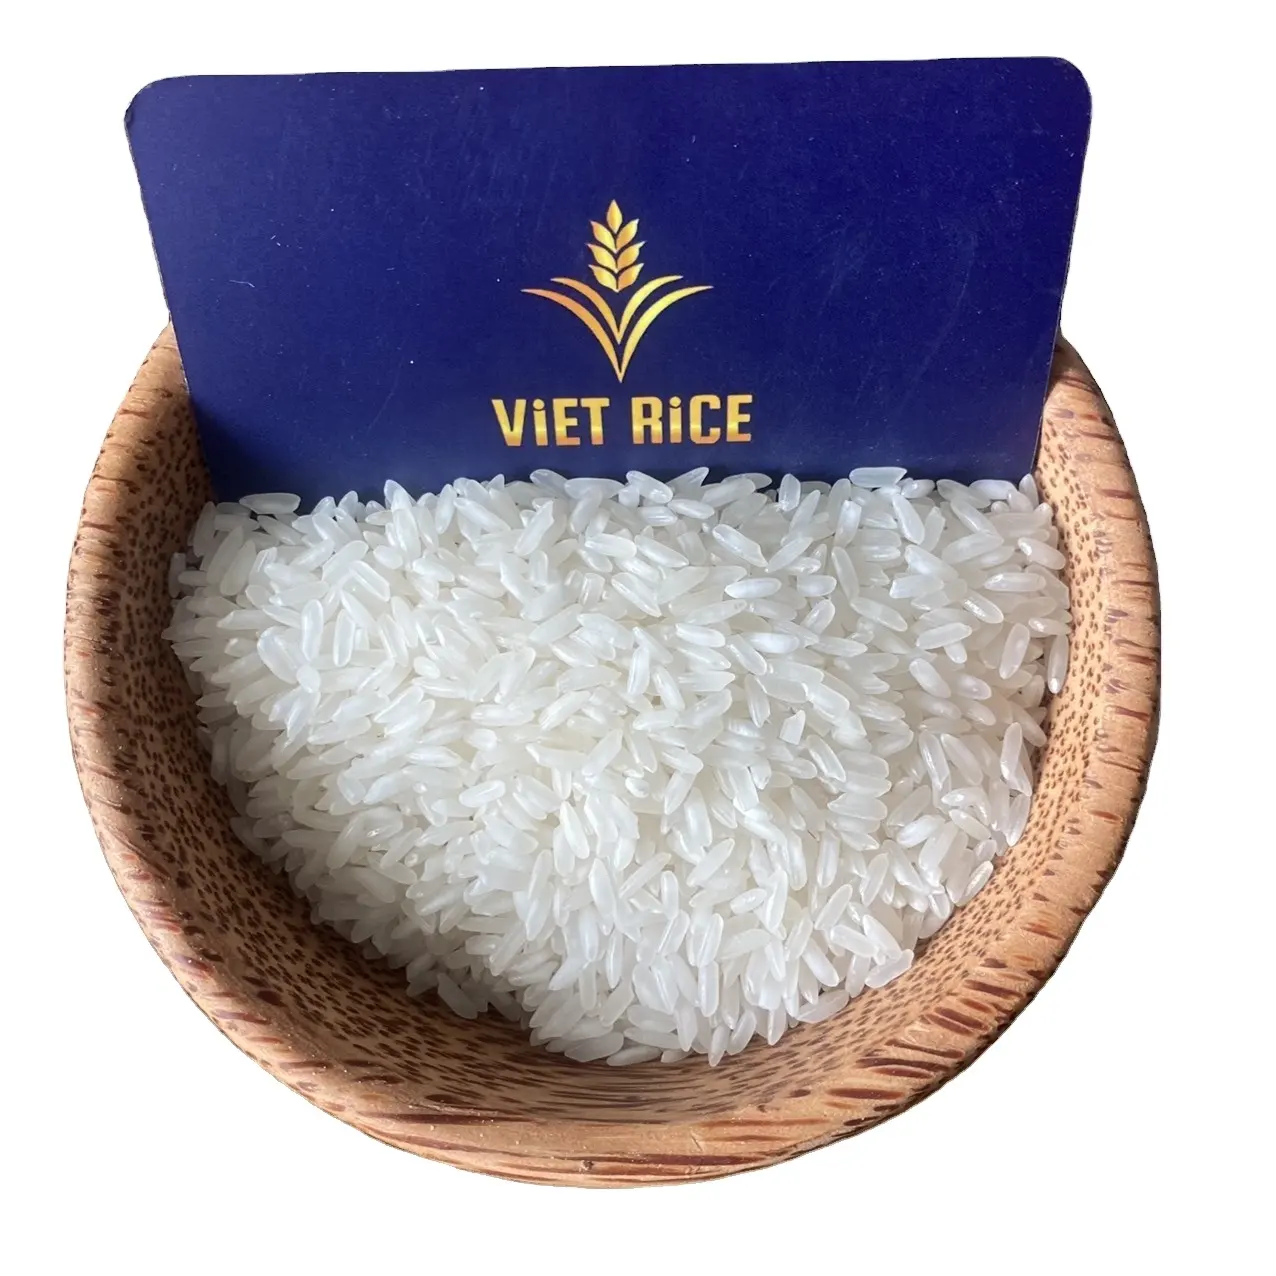 أرز أبيض طويل الحبوب ممتاز (IR504 5% مكسور) من مصنع ومصدِّر فيتنامي موثوق به، فييتريس، بسعر جيد